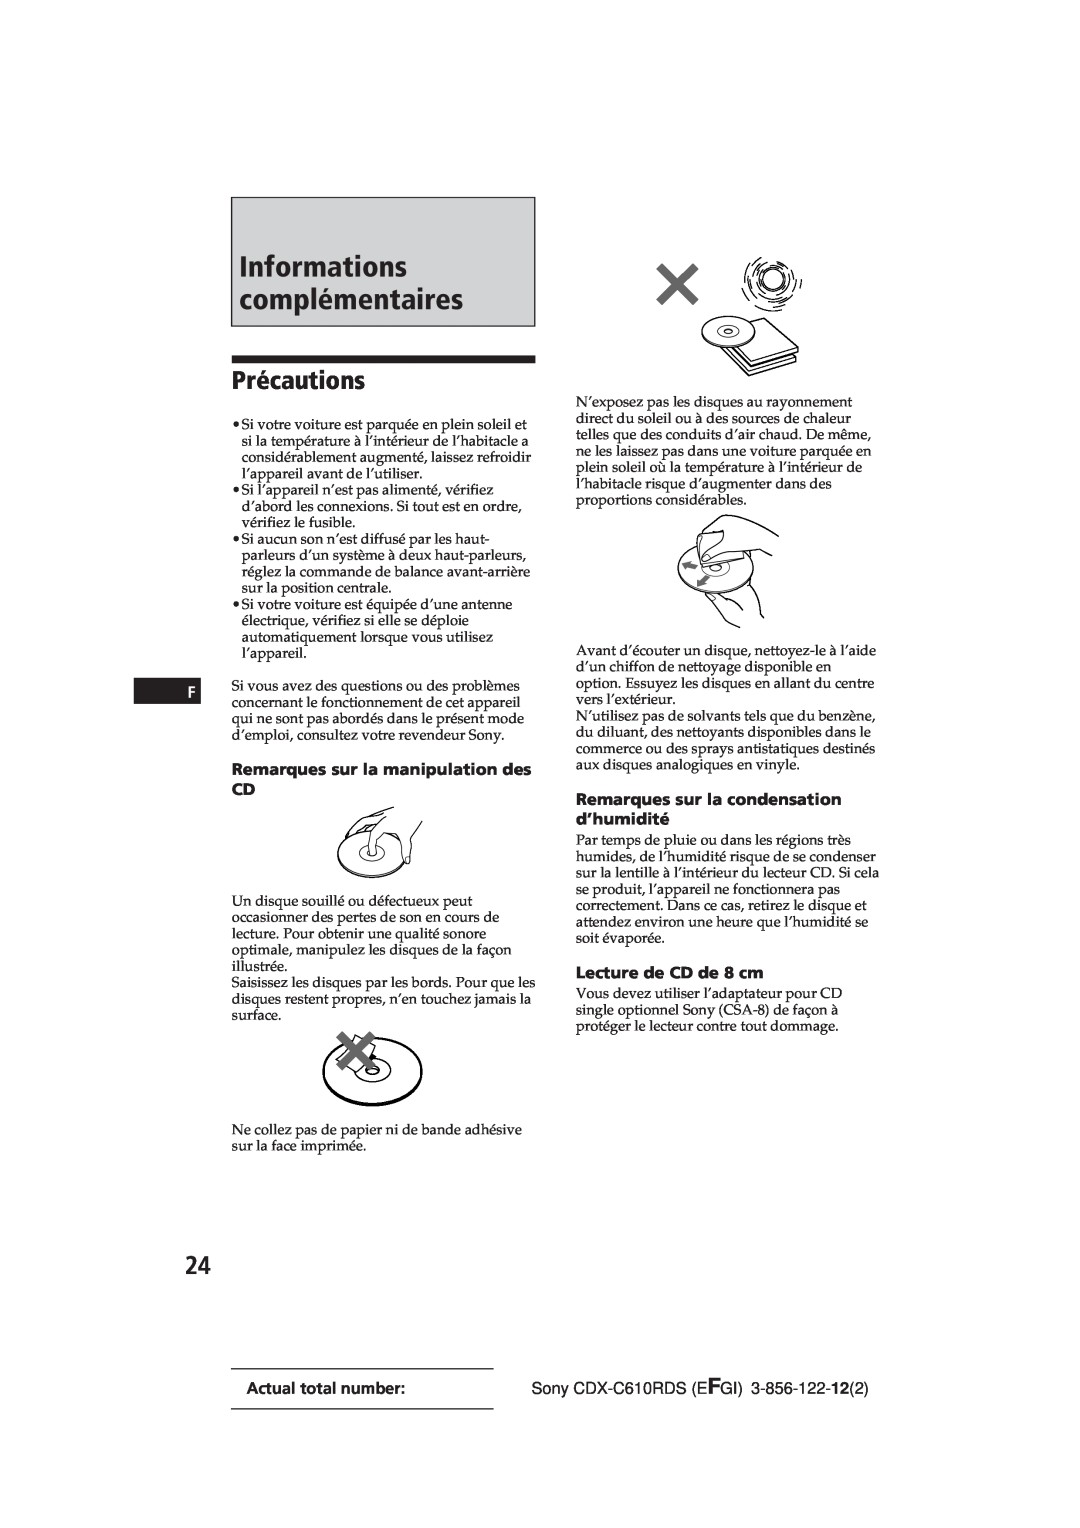 Sony CDX-C610RDS manual Précautions, Remarques sur la manipulation des CD, Remarques sur la condensation d’humidité 